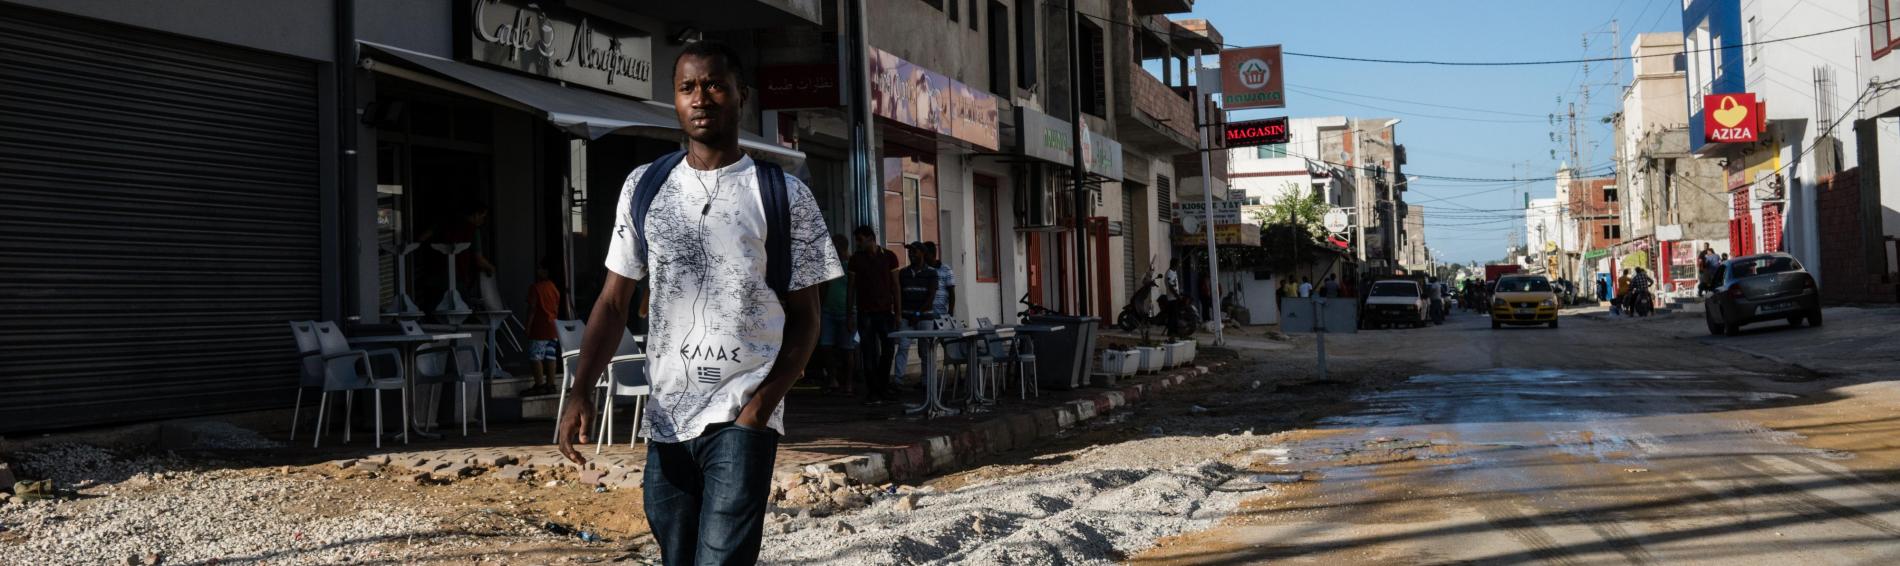 Een jongeman van Afrikaanse orgine loopt door een verlaten straat in Tunis. Hij draagtt rode sportschoenen, een jeans en een T-shirt waarop 'Ellada' (Griekenland) staat geschreven. Op de achtergrond zijn winkels te zien. De straat is in slechte staat en ligt er verlaten bij.